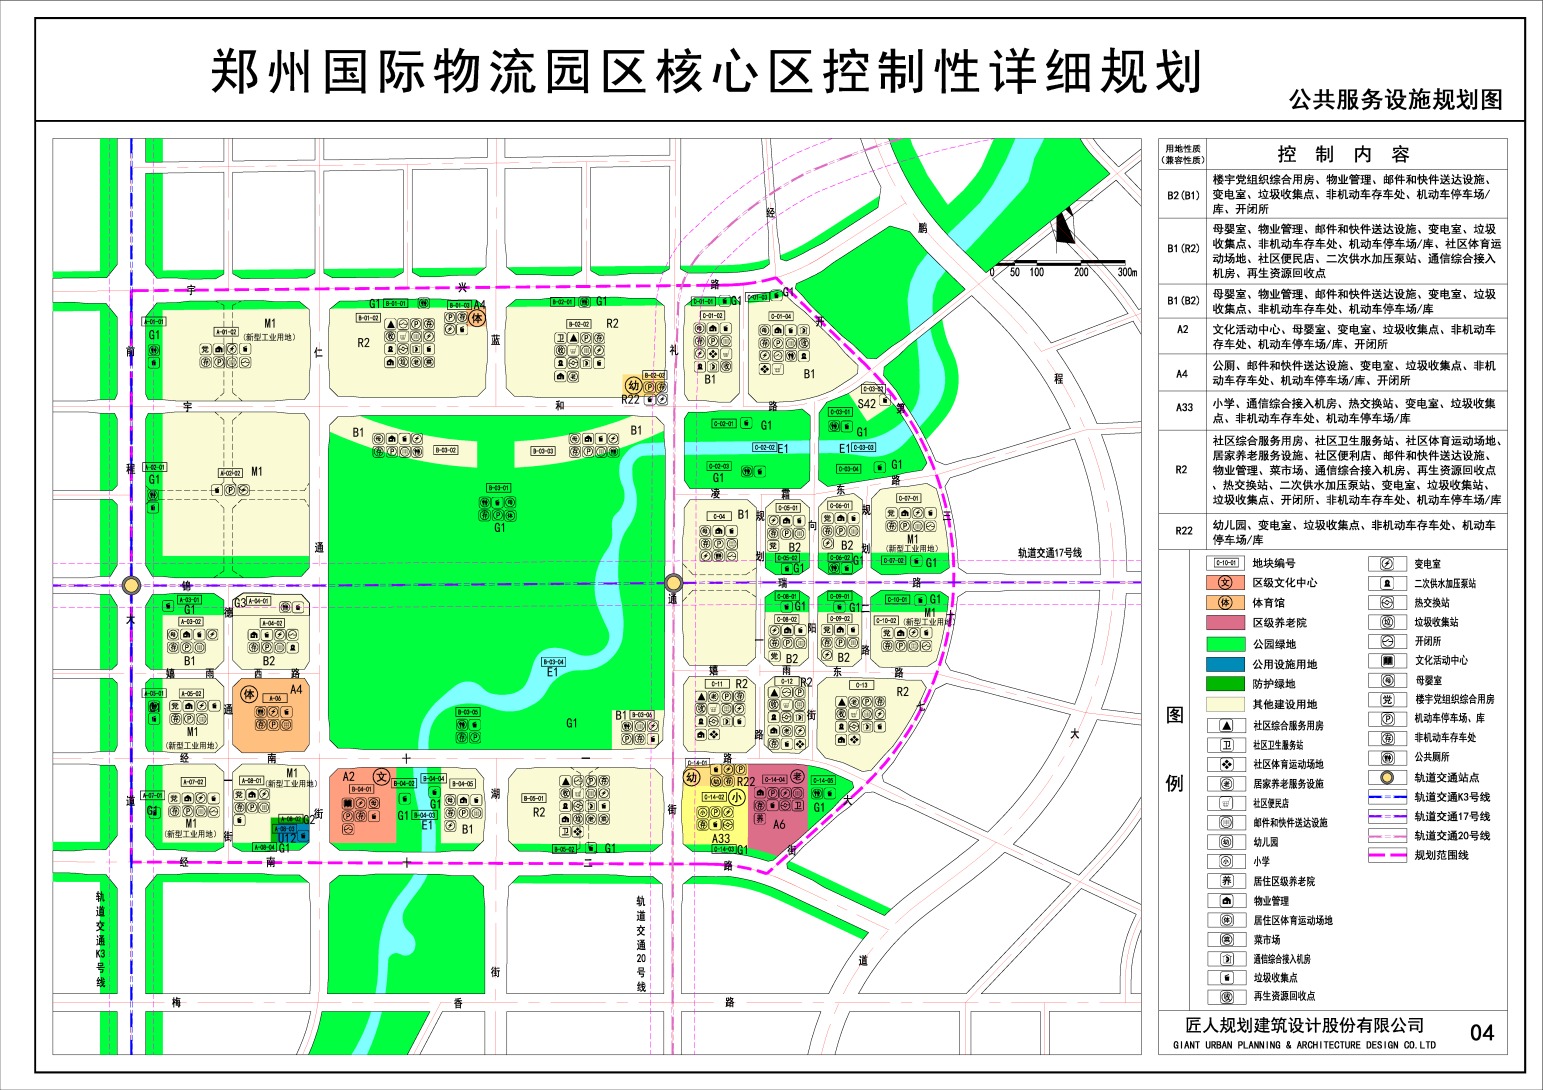 3405亩!郑州国际物流园区核心板块最新规划出炉